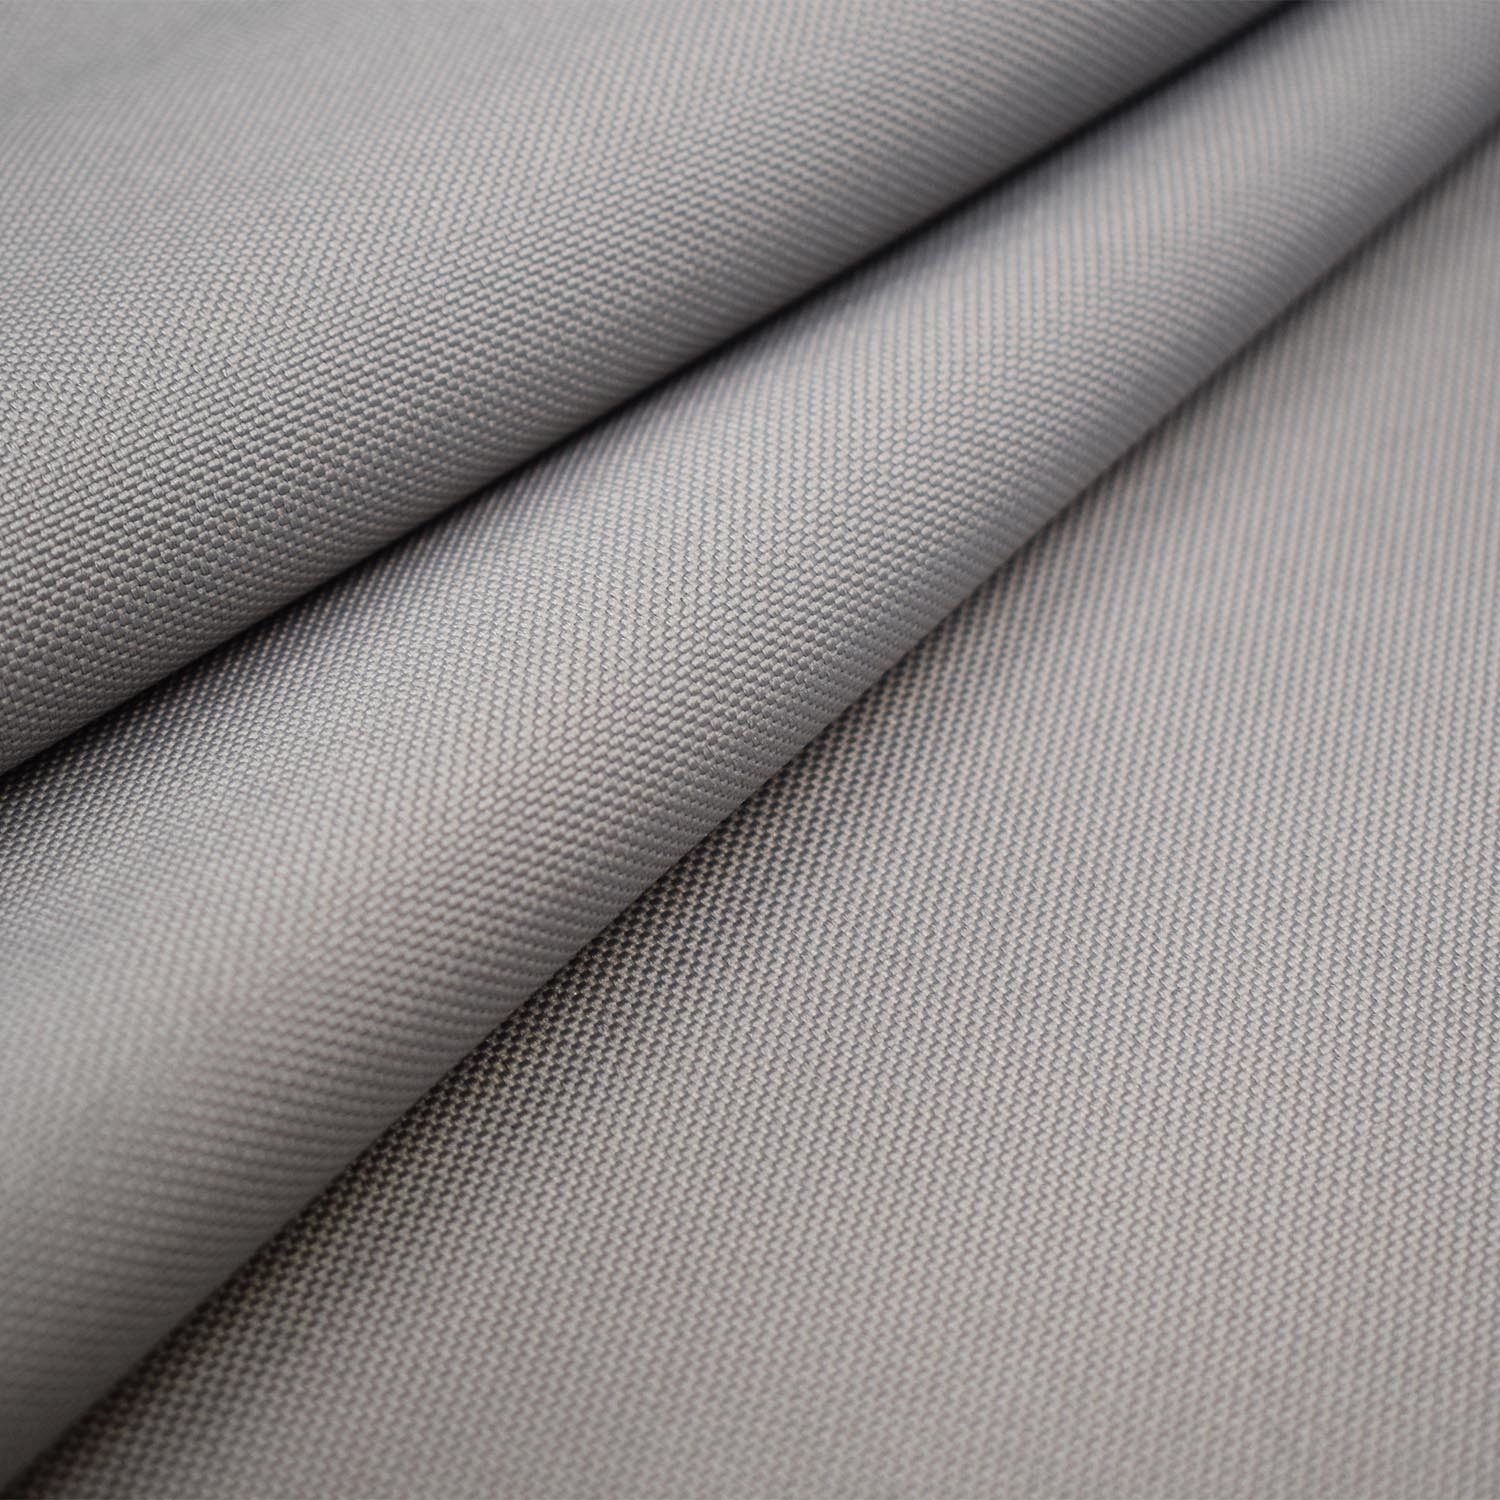 Obrusowa tkanina w jednolitym kolorze.